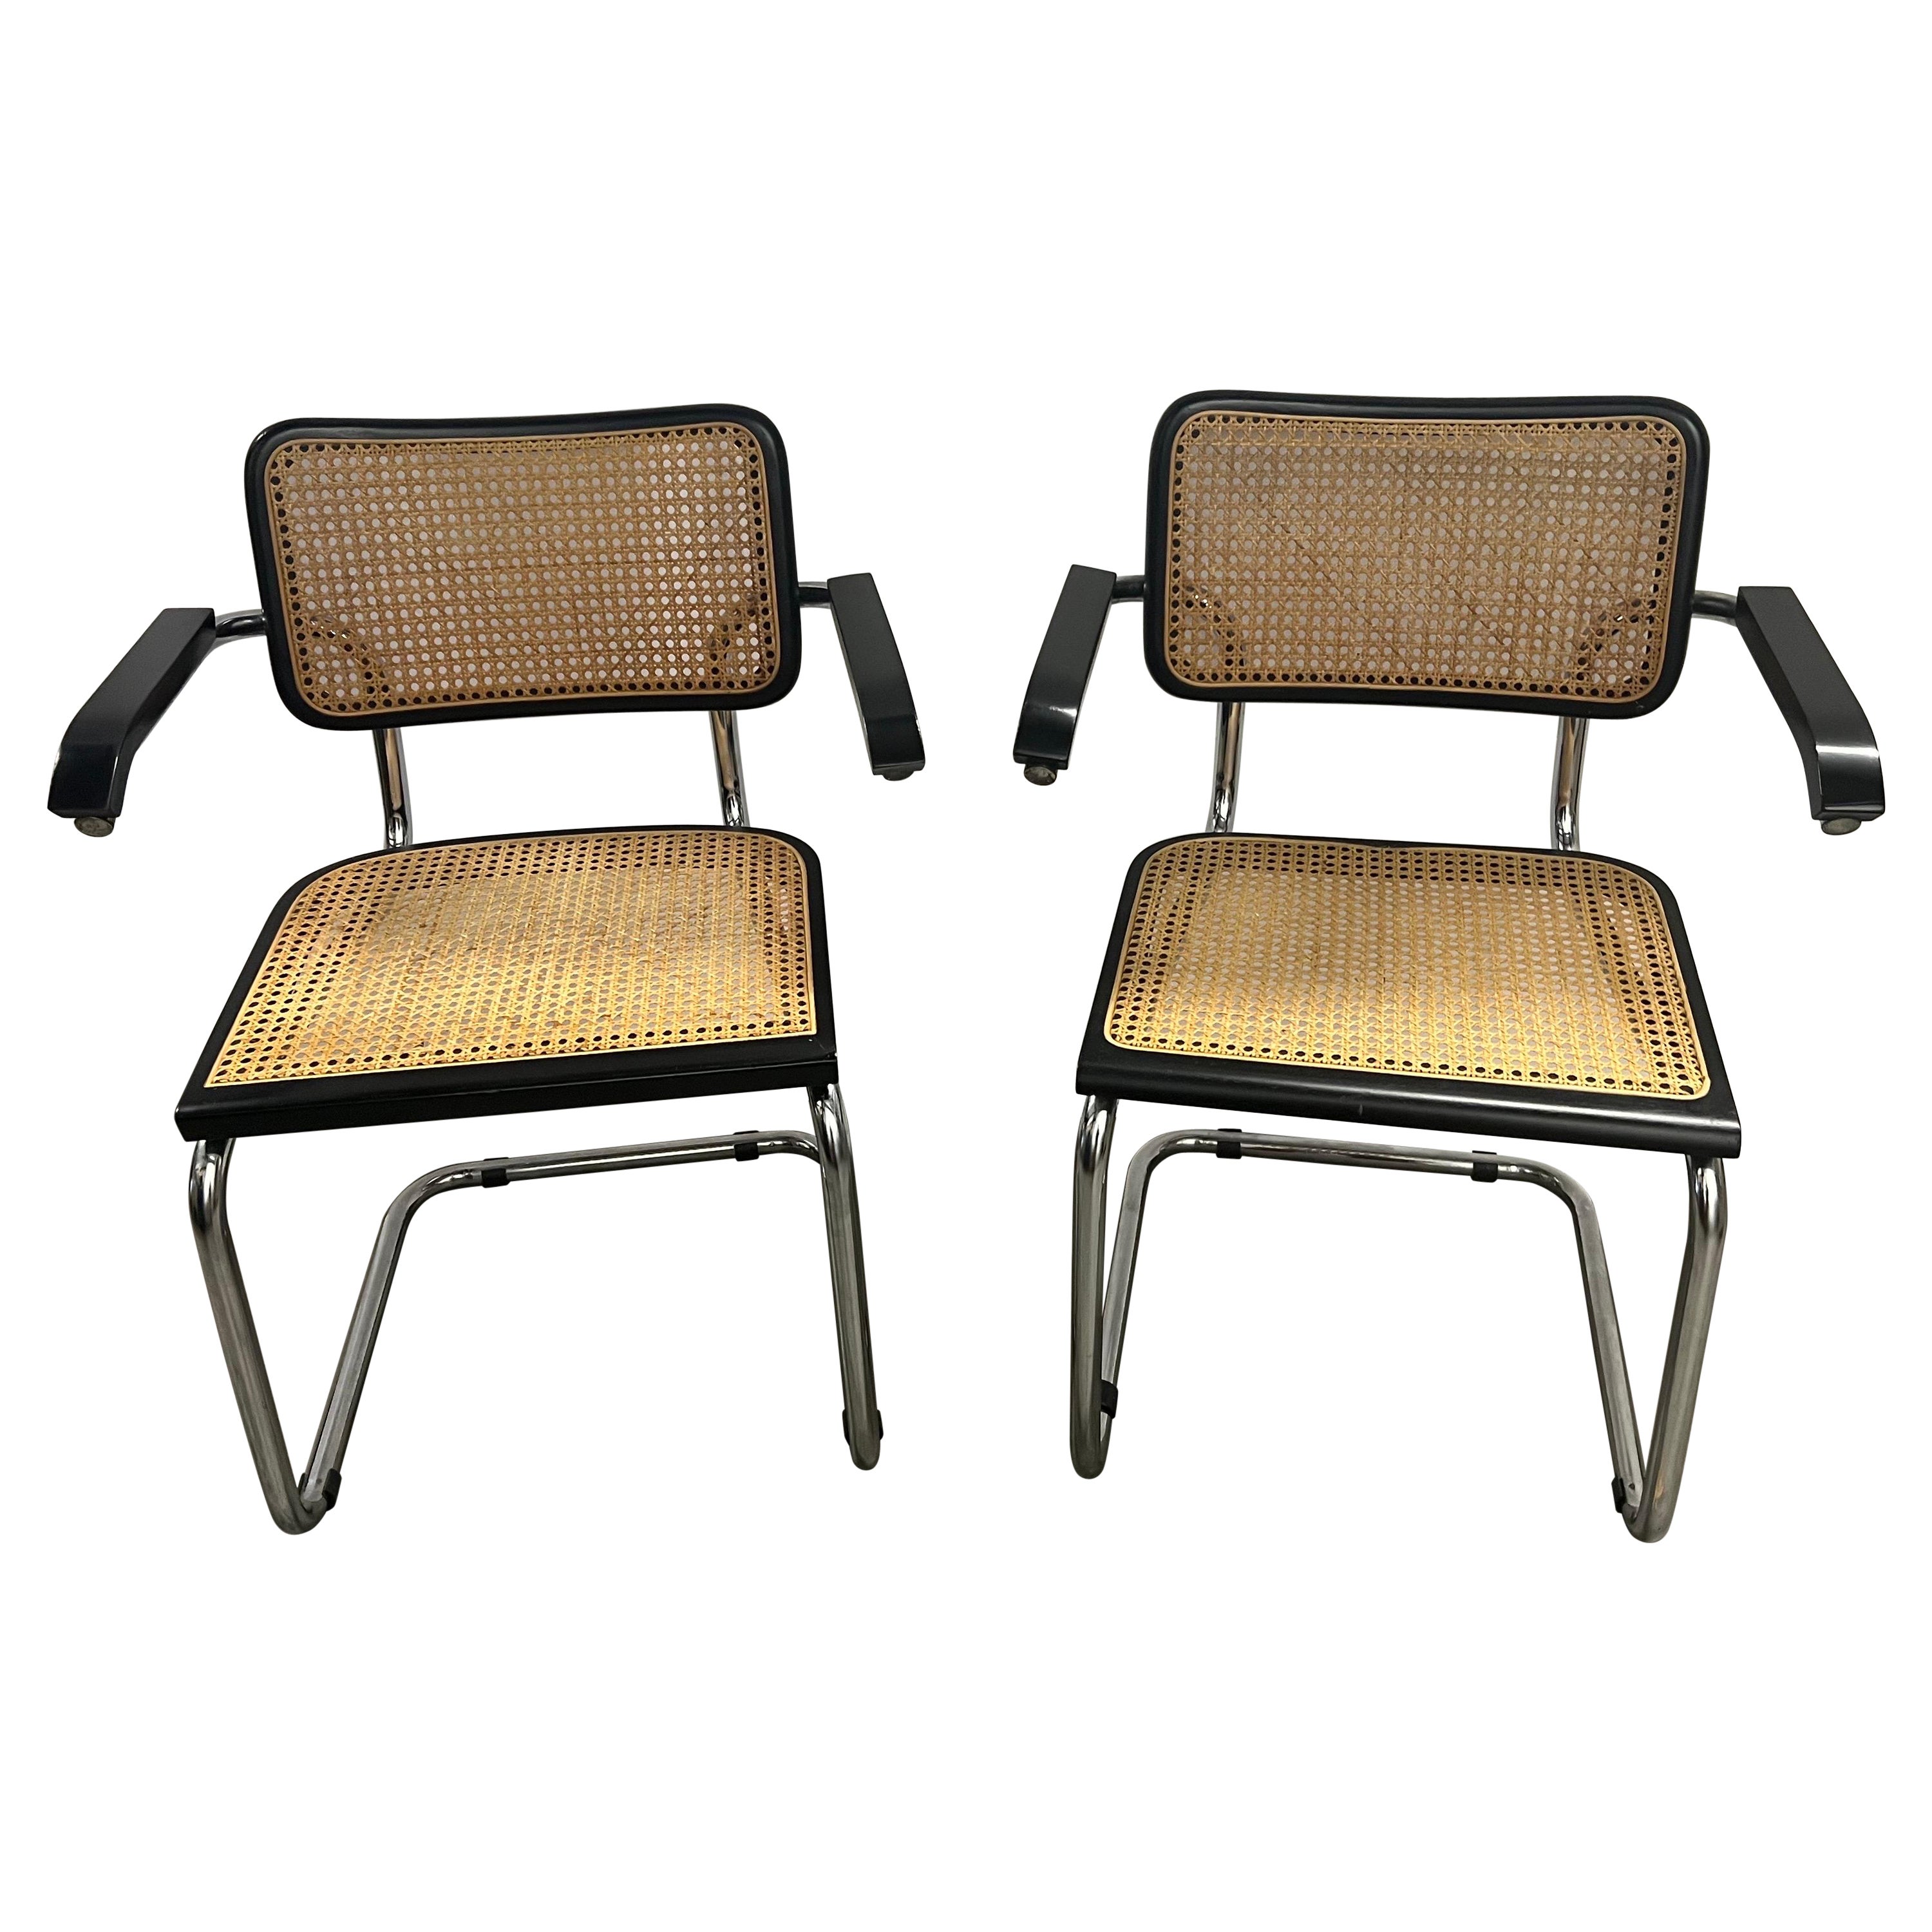 Bahaus Marcel Breuer Cesca Chair S64  For Sale